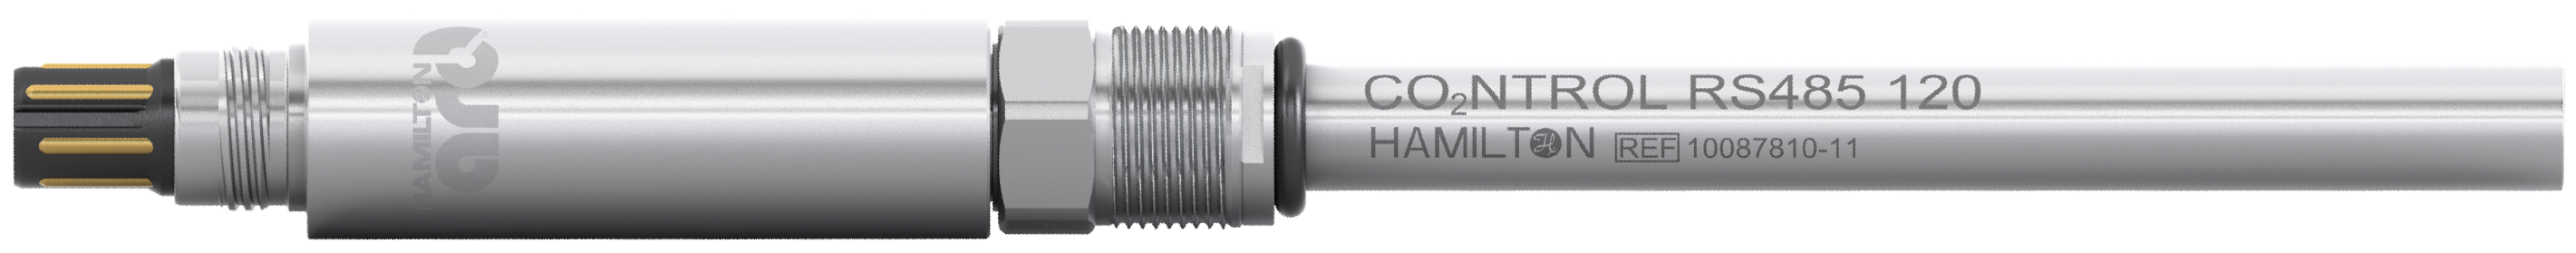 ハミルトン 光学式溶存二酸化炭素センサー CO2NTROL センサー写真 | Hamilton DCO2 Sensor CO2NTROL Image